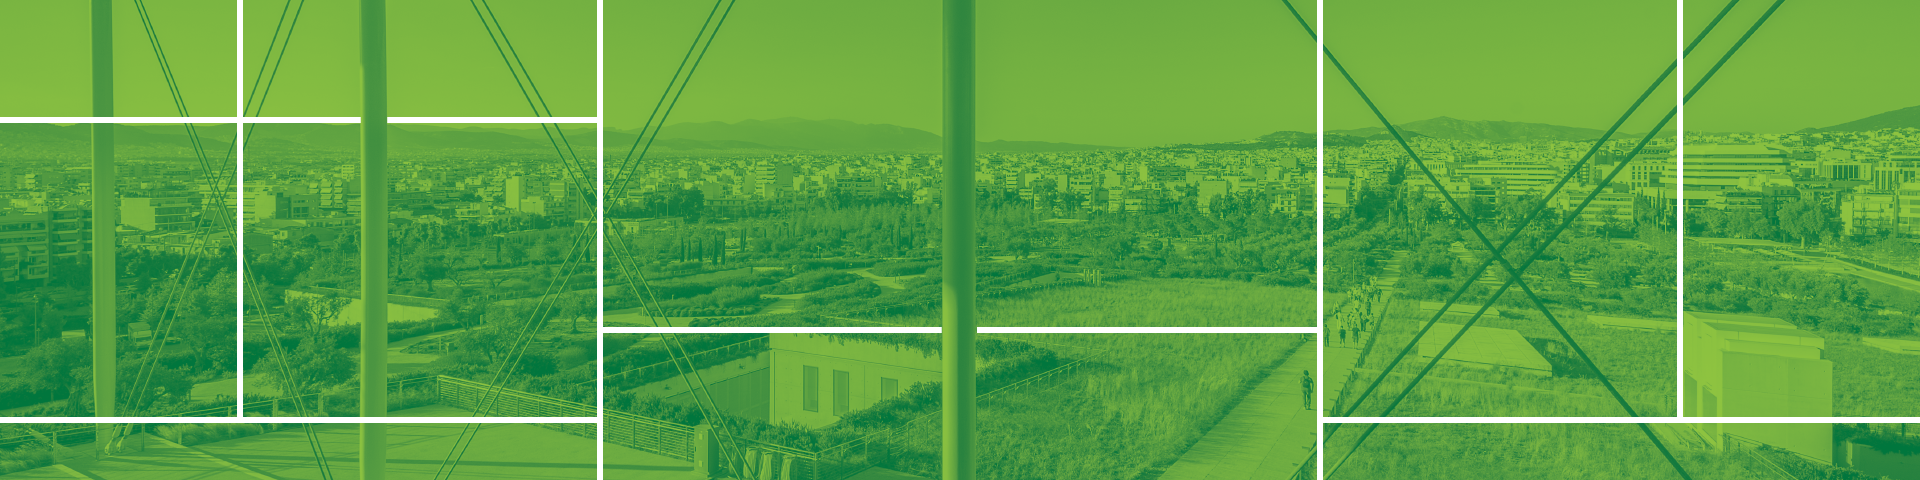 Συνεργασία ΚΠΙΣΝ & JA Greece: Μια πόλη, ένα οικοσύστημα & Εικονική Επιχείρηση   - Εικόνα